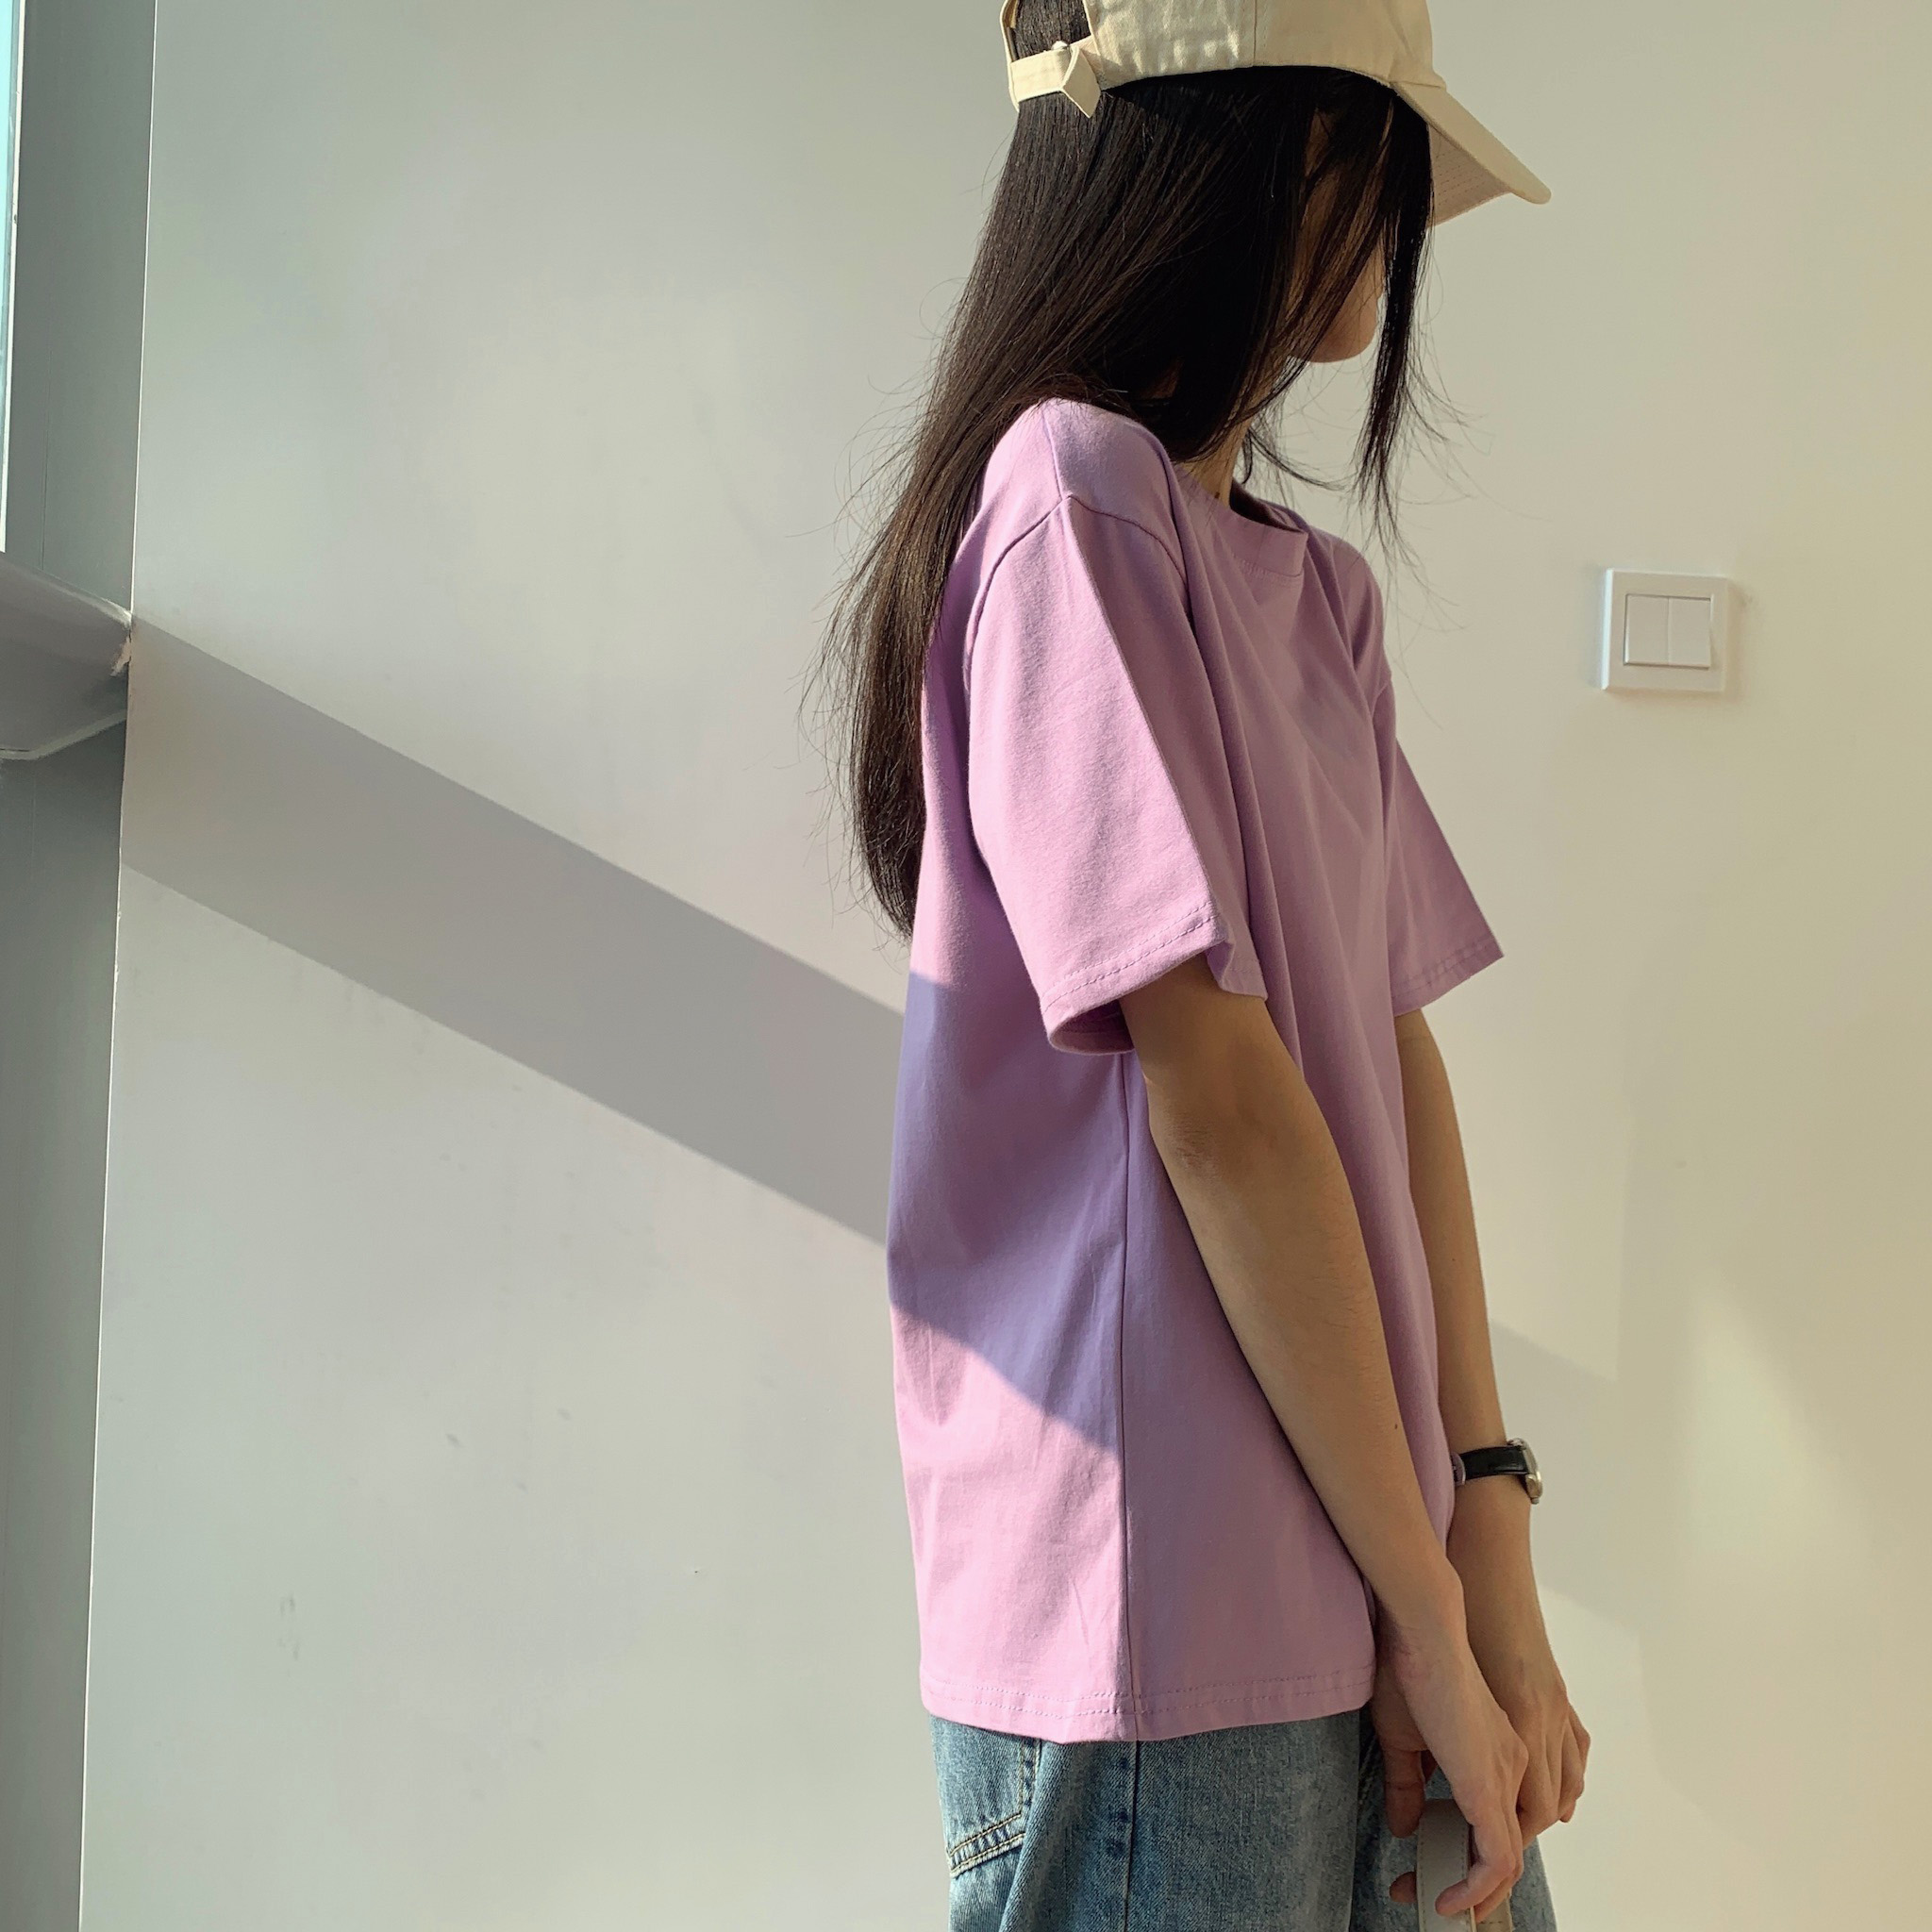 紫色t恤女2021新款春夏季女装基础款圆领白色短袖棉质上衣体恤ins